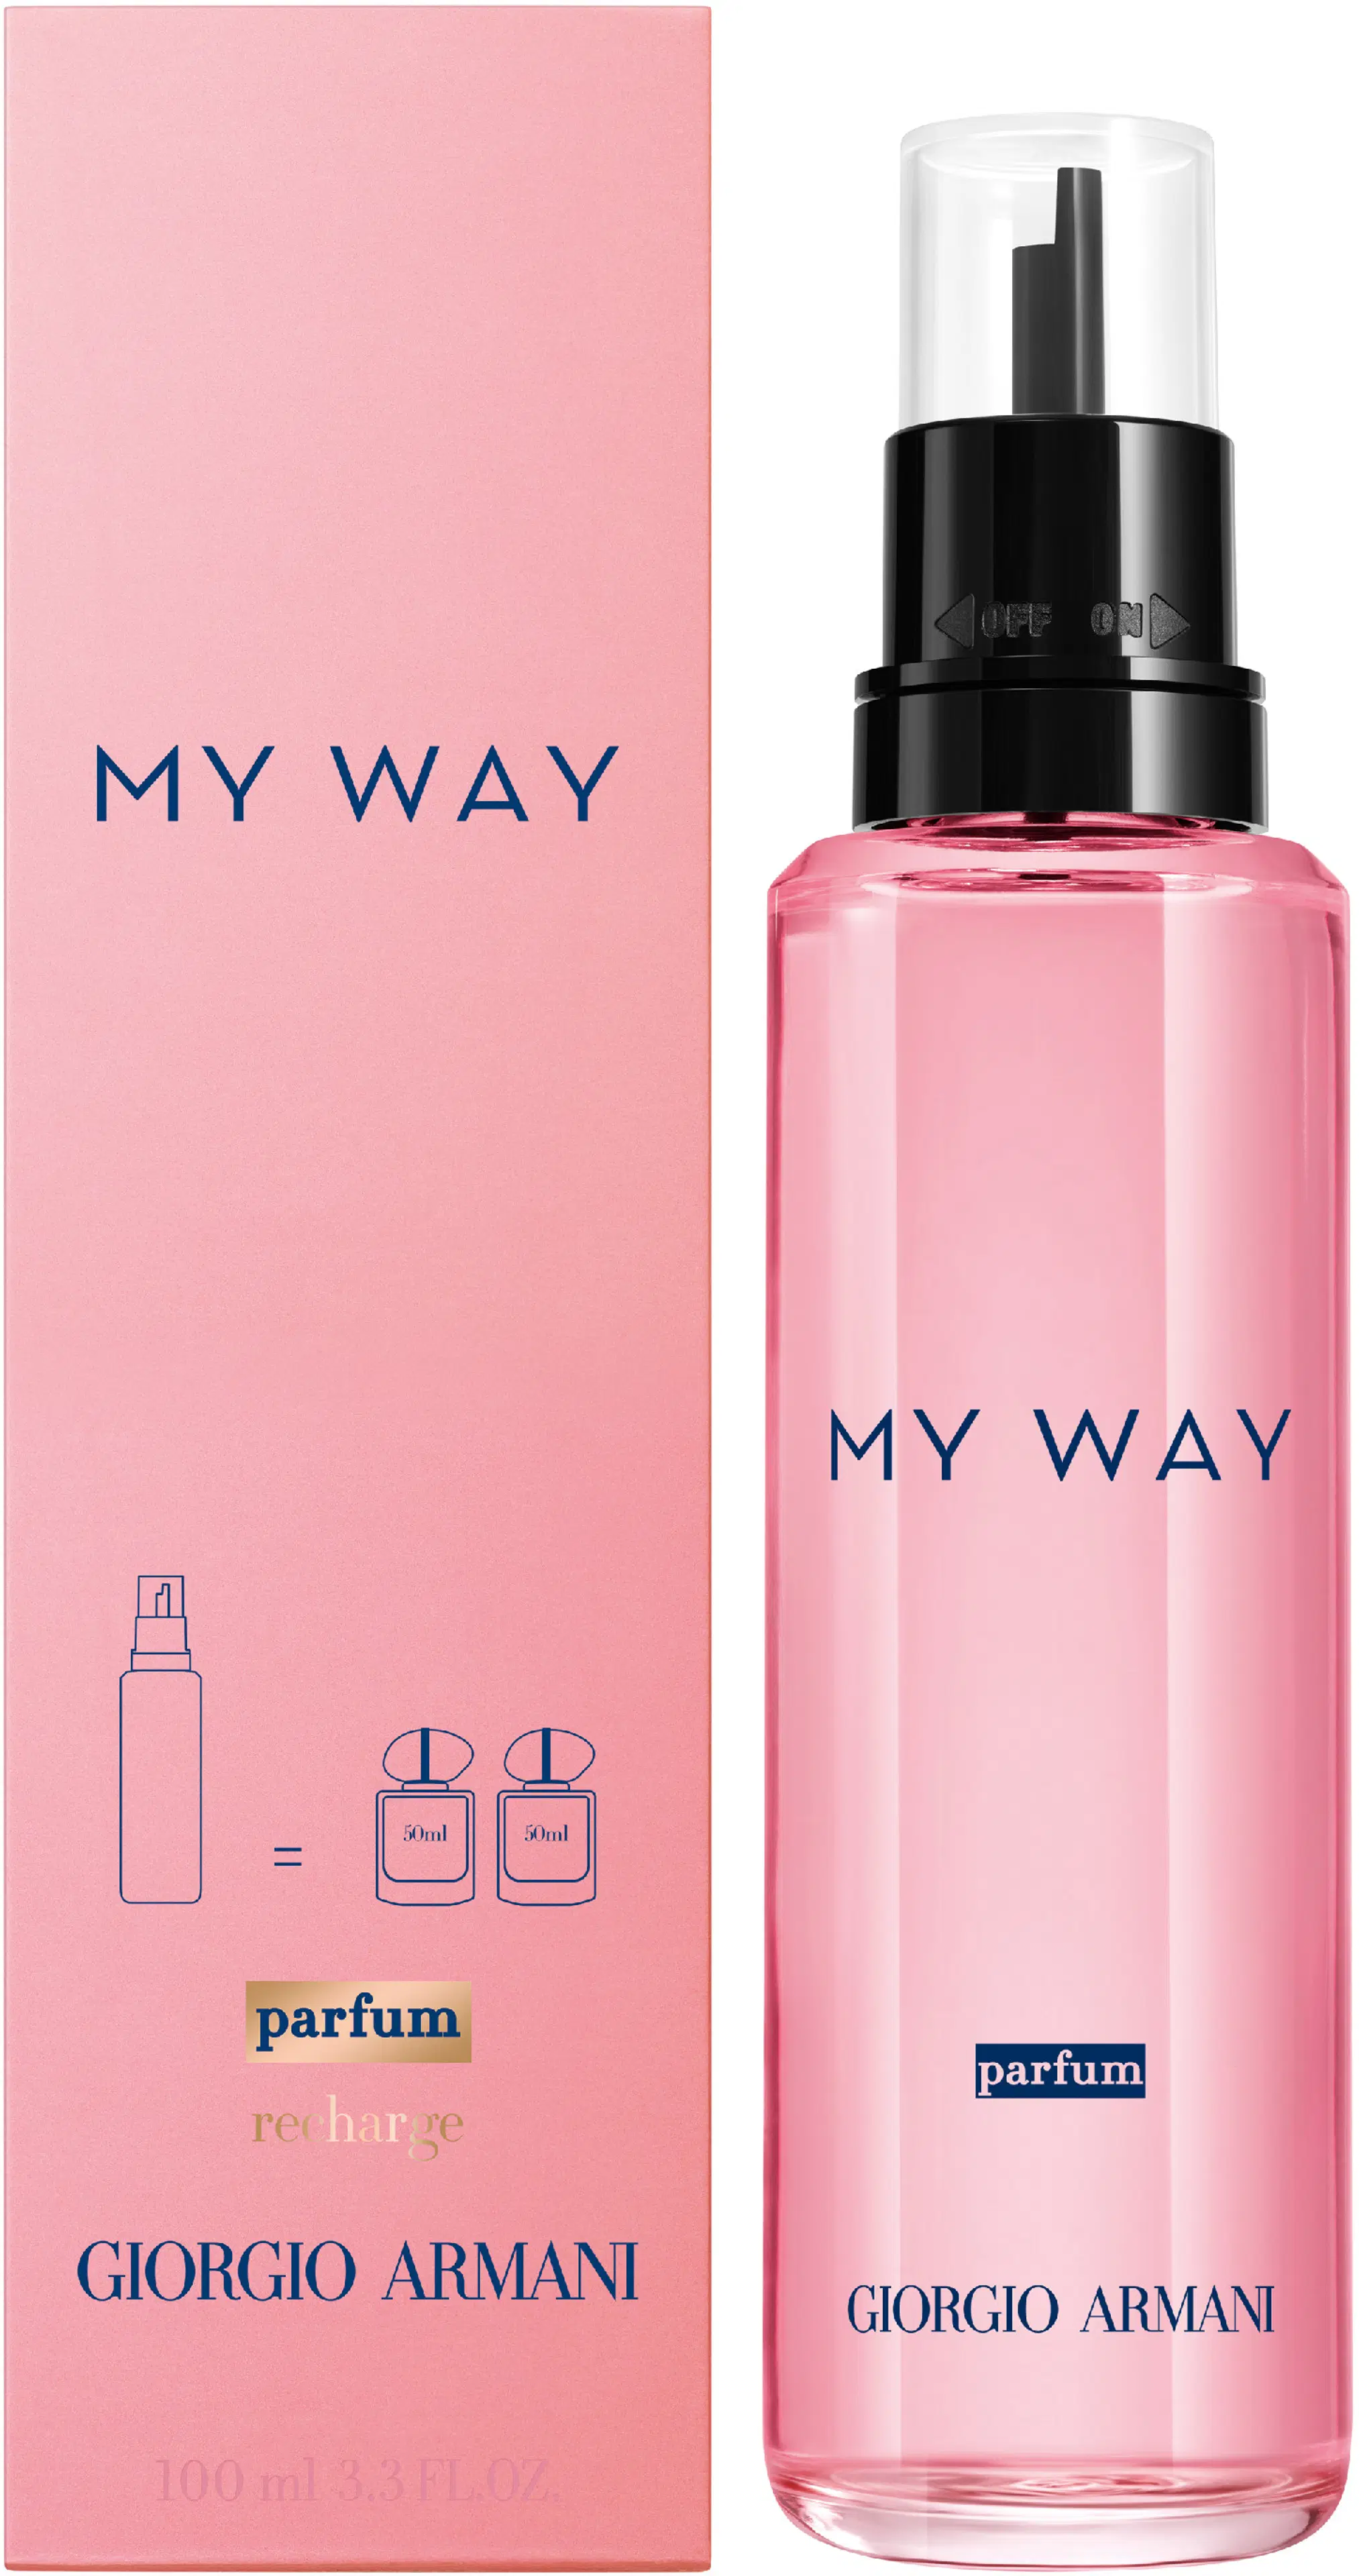 Giorgio Armani My Way Parfum tuoksu 100 ml täyttöpakkaus